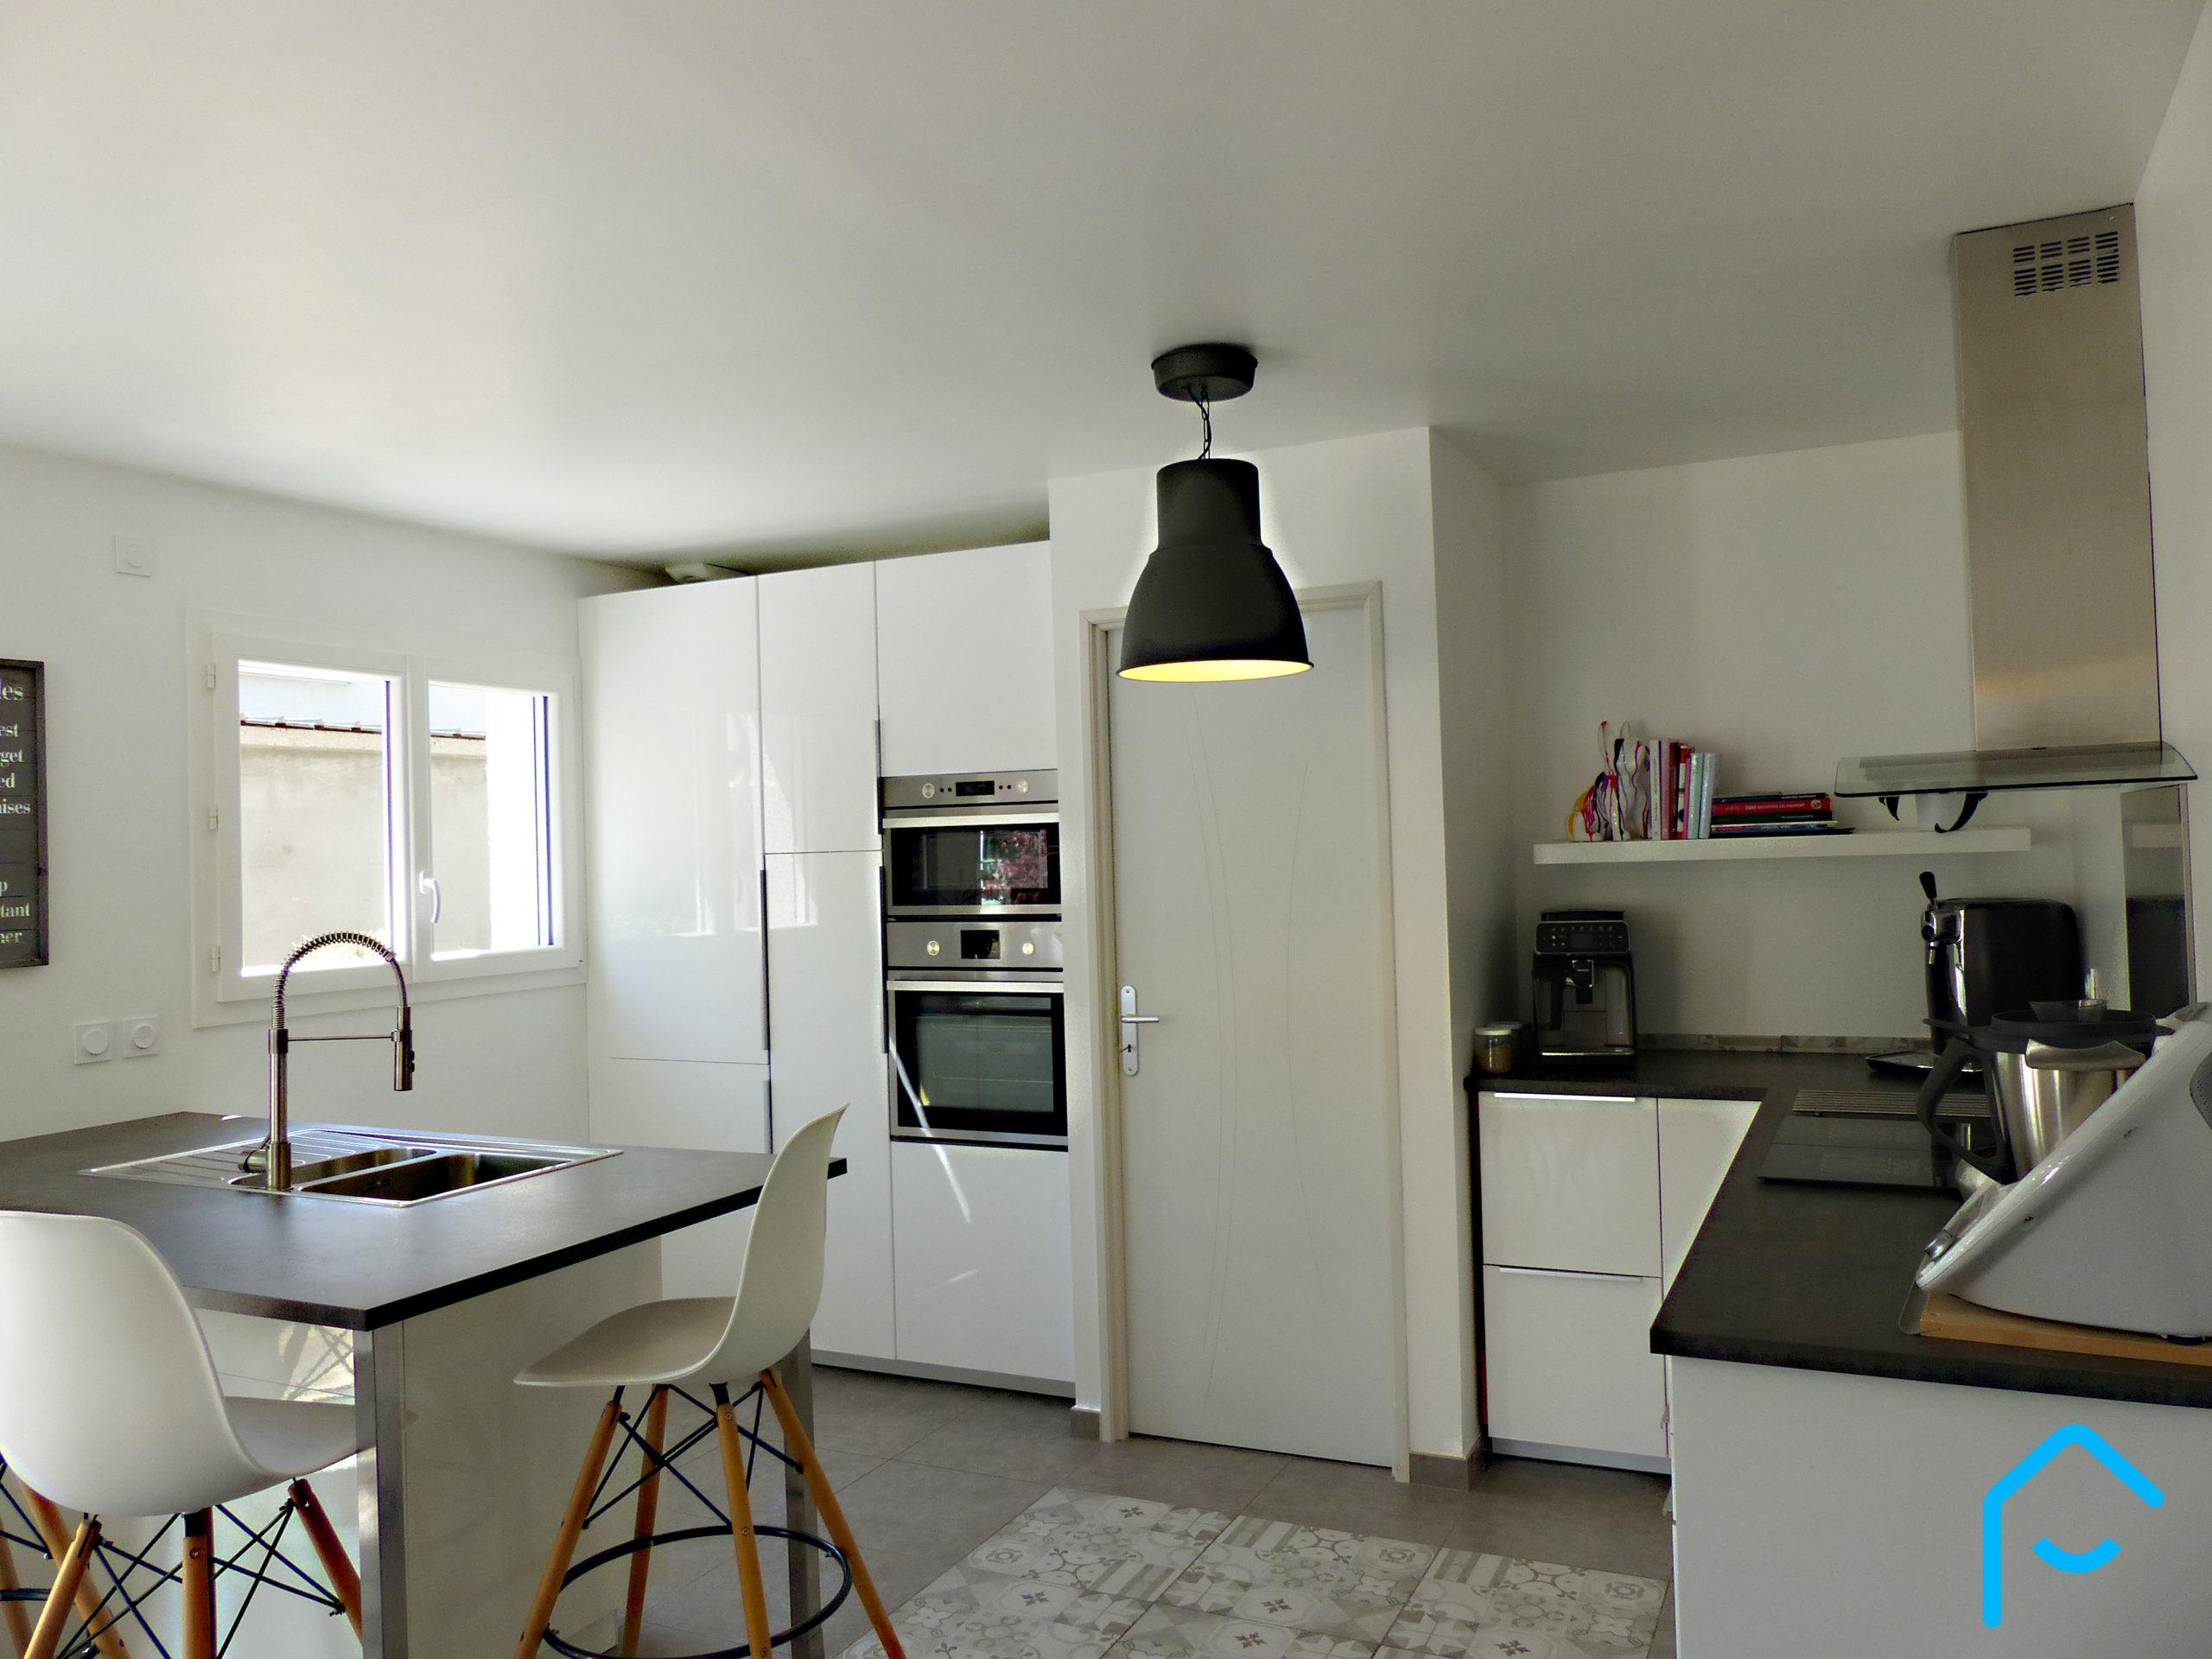 Vente maison récente Aix Les Bains Savoie 100 m² luminosité terrain maison familliale 3 chambres cuisine ouverte 2